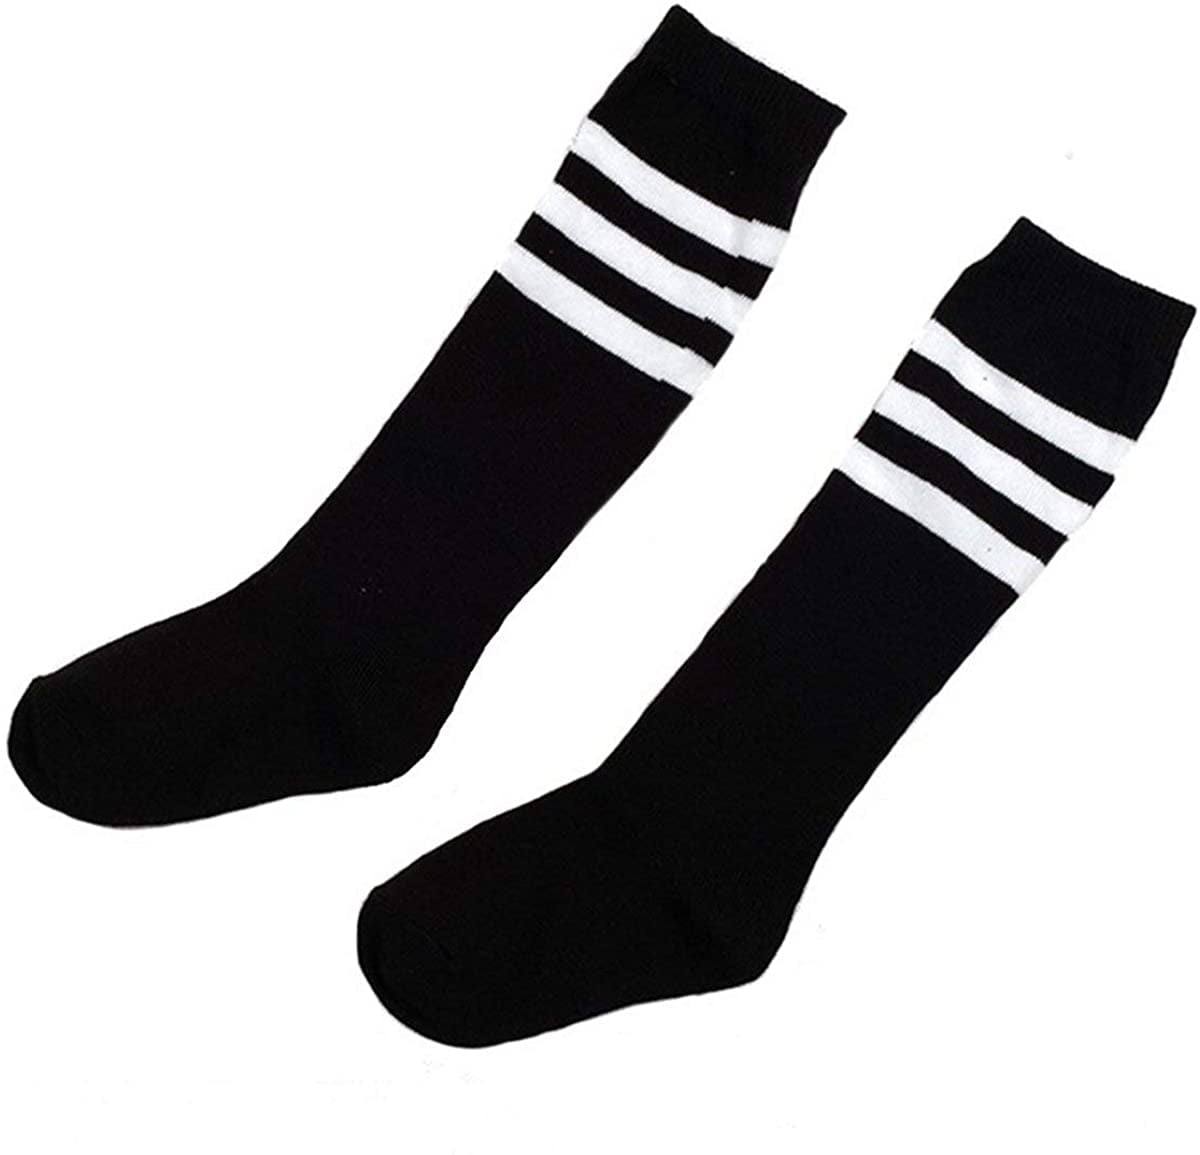 Ewanda store 1 Pair Cotton Stripe Pattern Over Knee Long Soccer Socks,Breathable Team Socks School Socks for 8-12 Years old Students Children Kids Girls Boys 